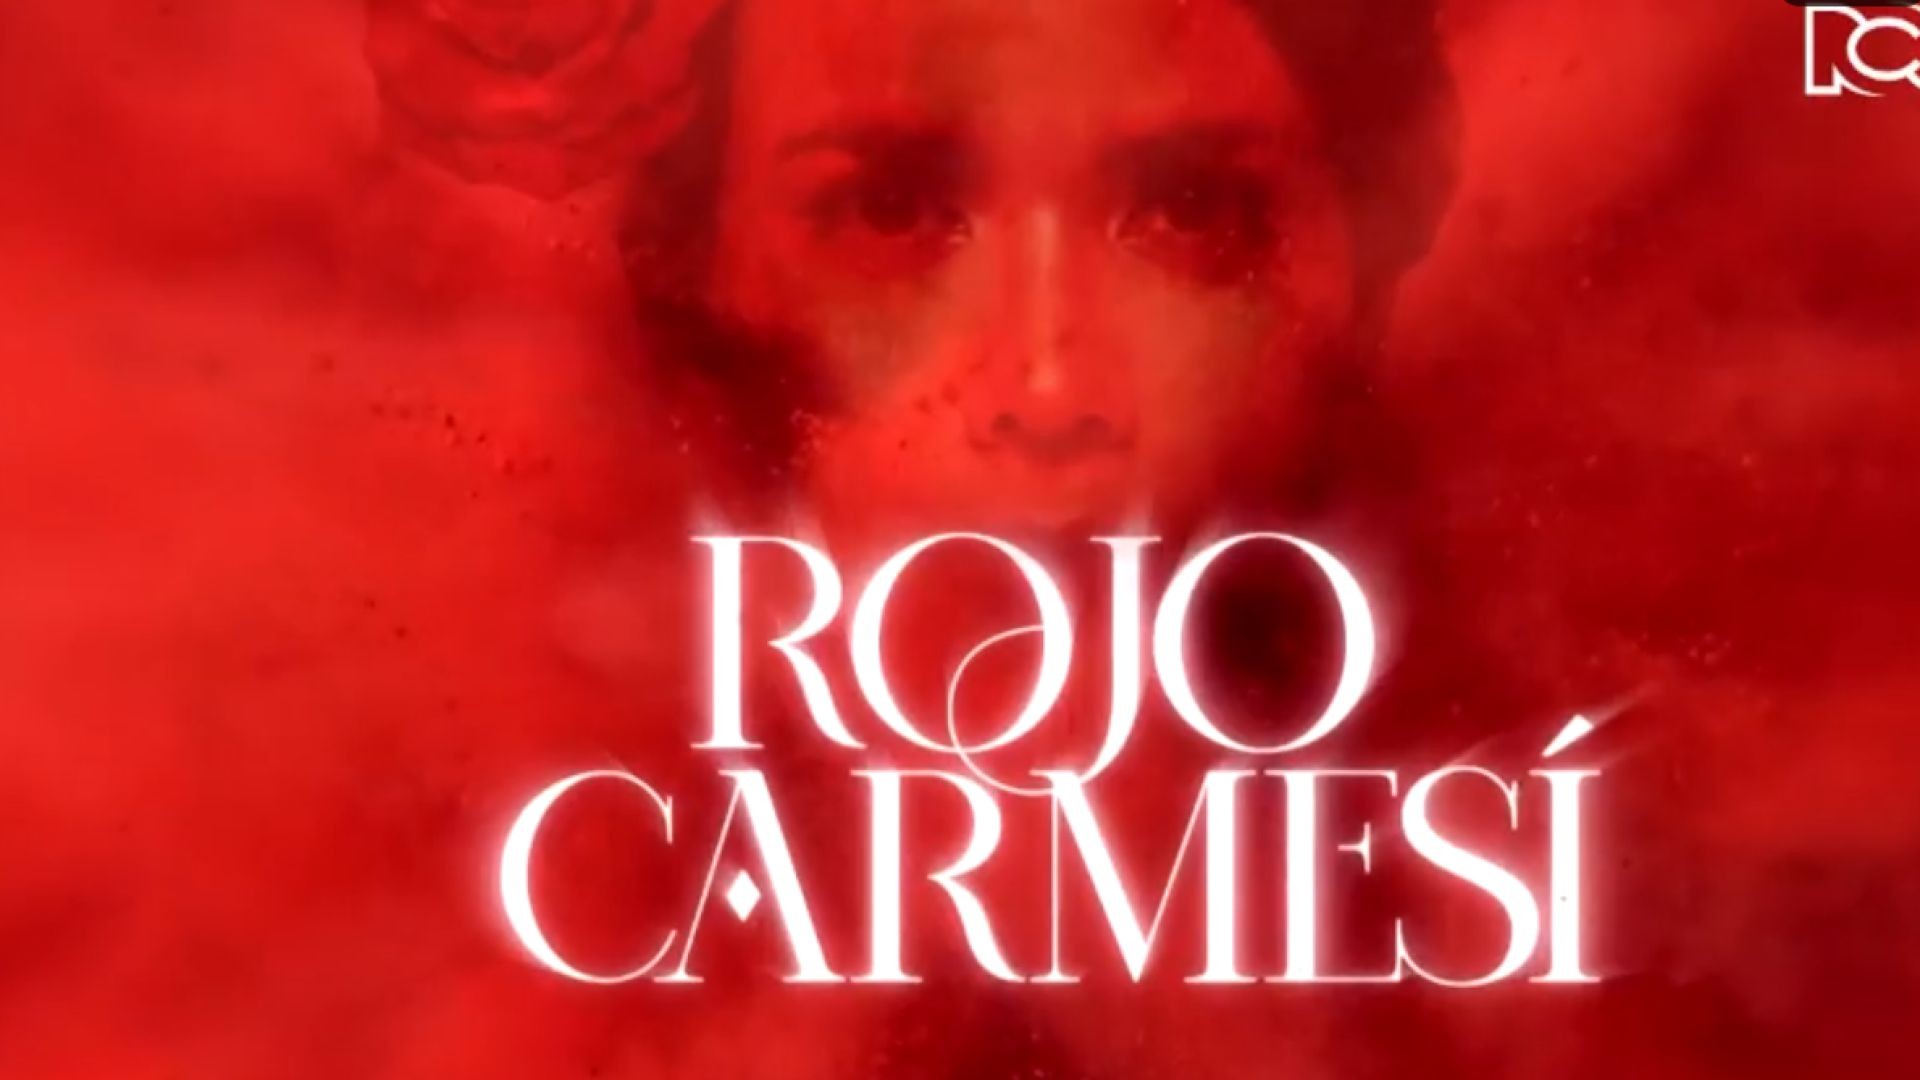 Rojo Carmesí Capitulo 1 Completo - Rojo Carmesí telenovela